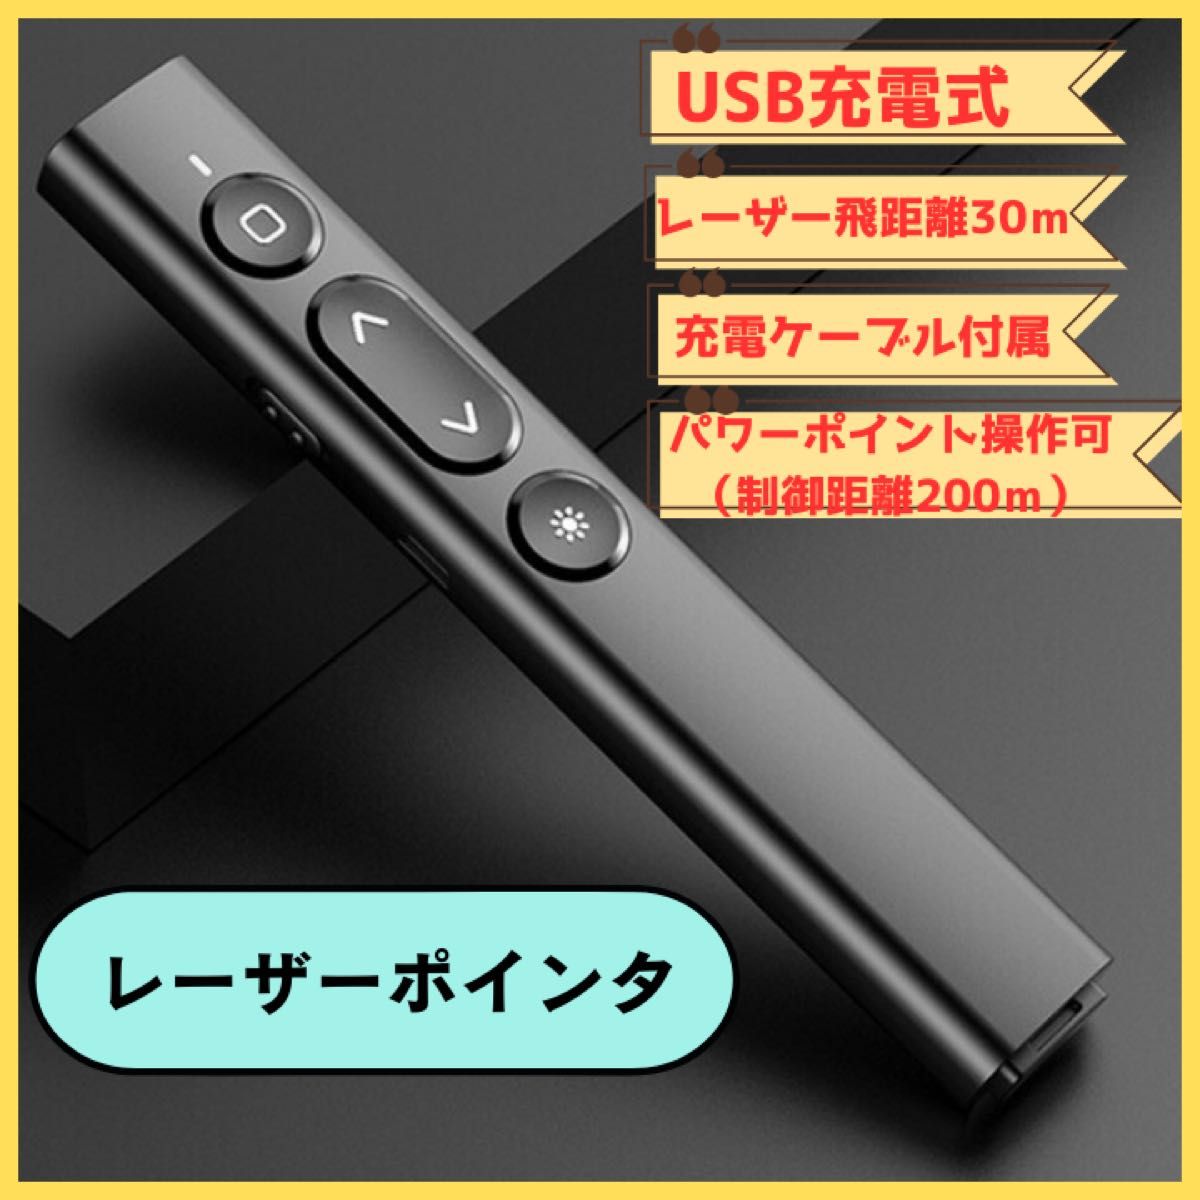 レーザーポインター USB 充電 充電 パソコン プレゼン 会議 グッズ